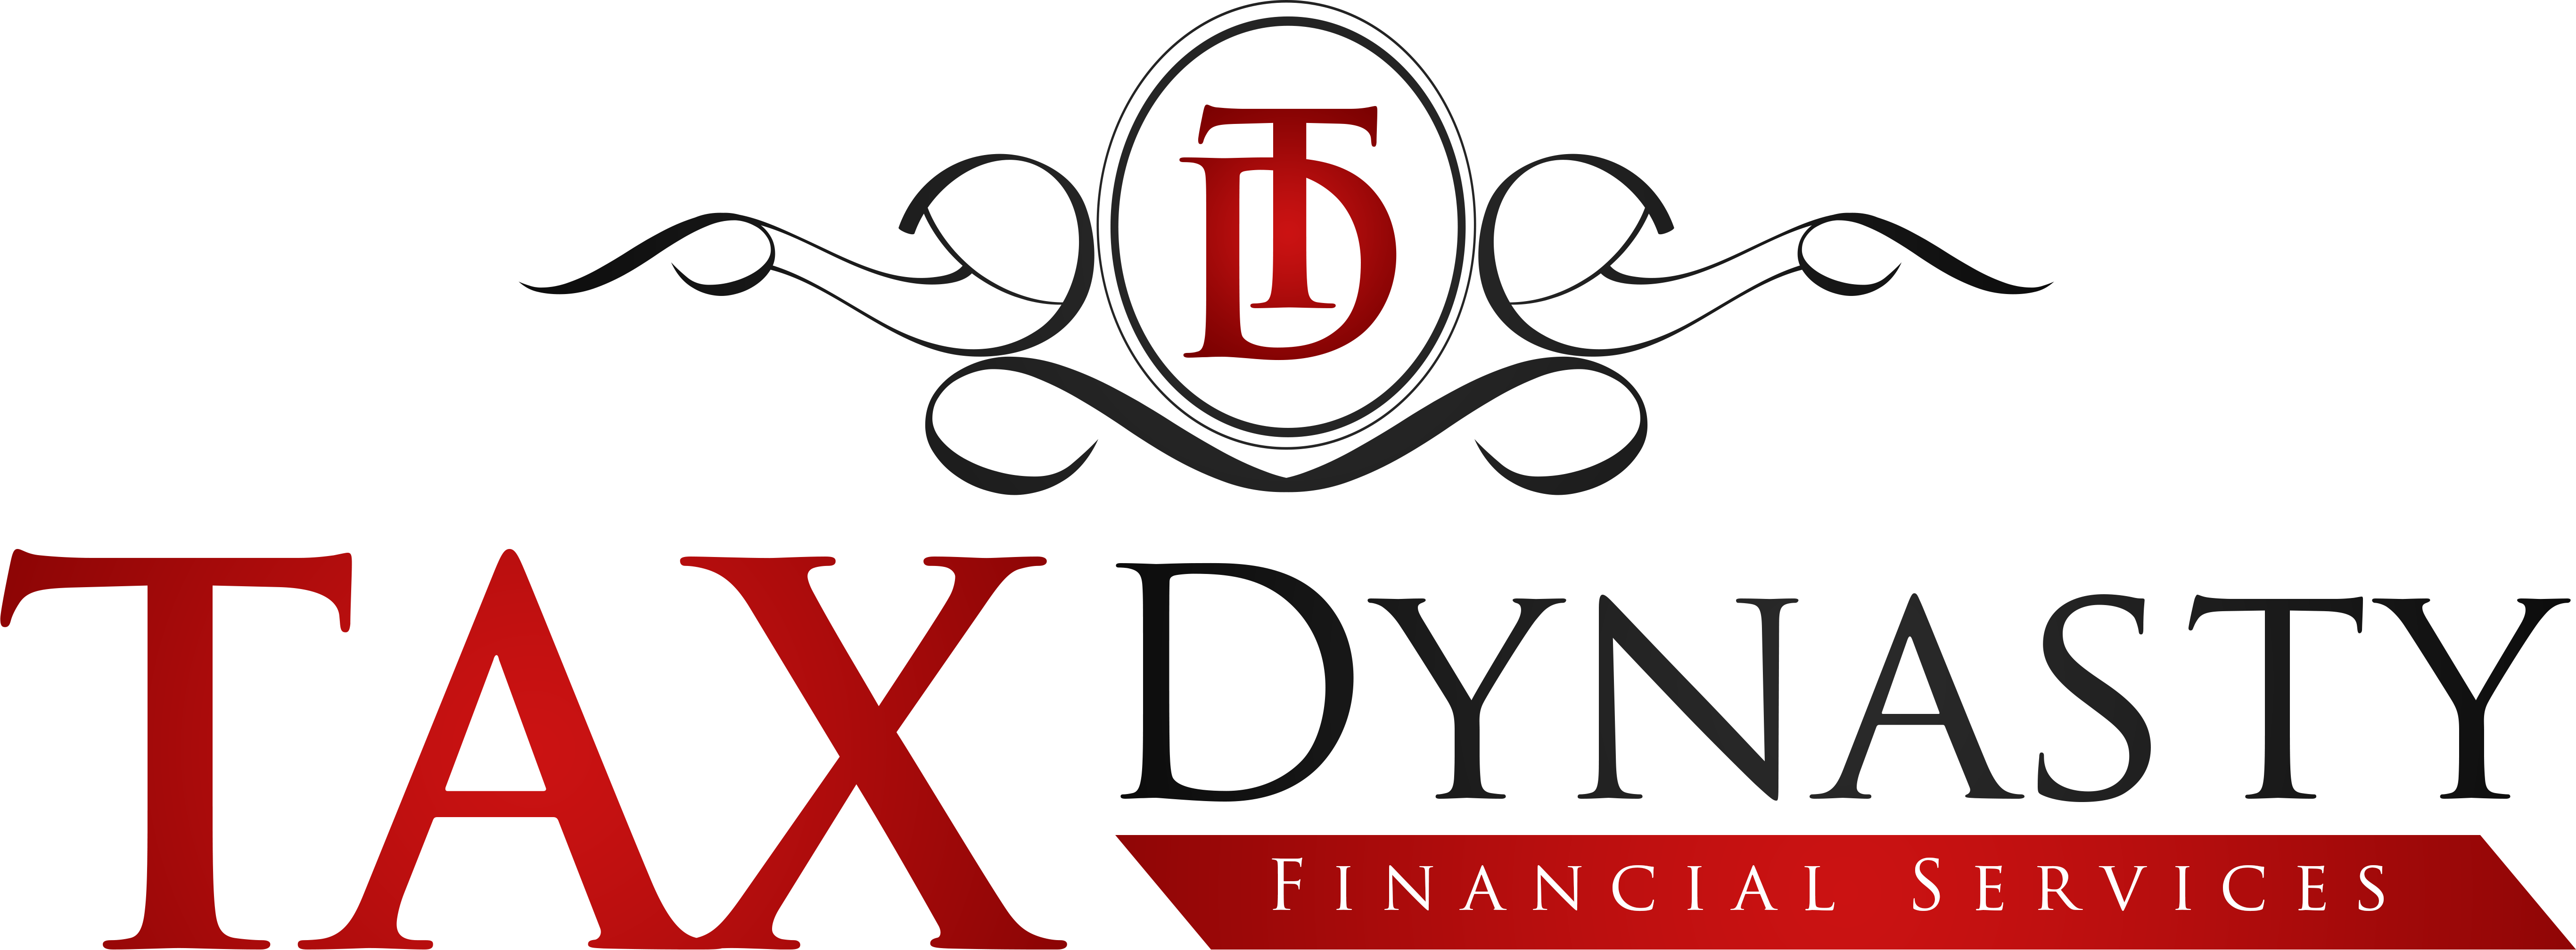 Tax Dynasty Financial Services LLC 